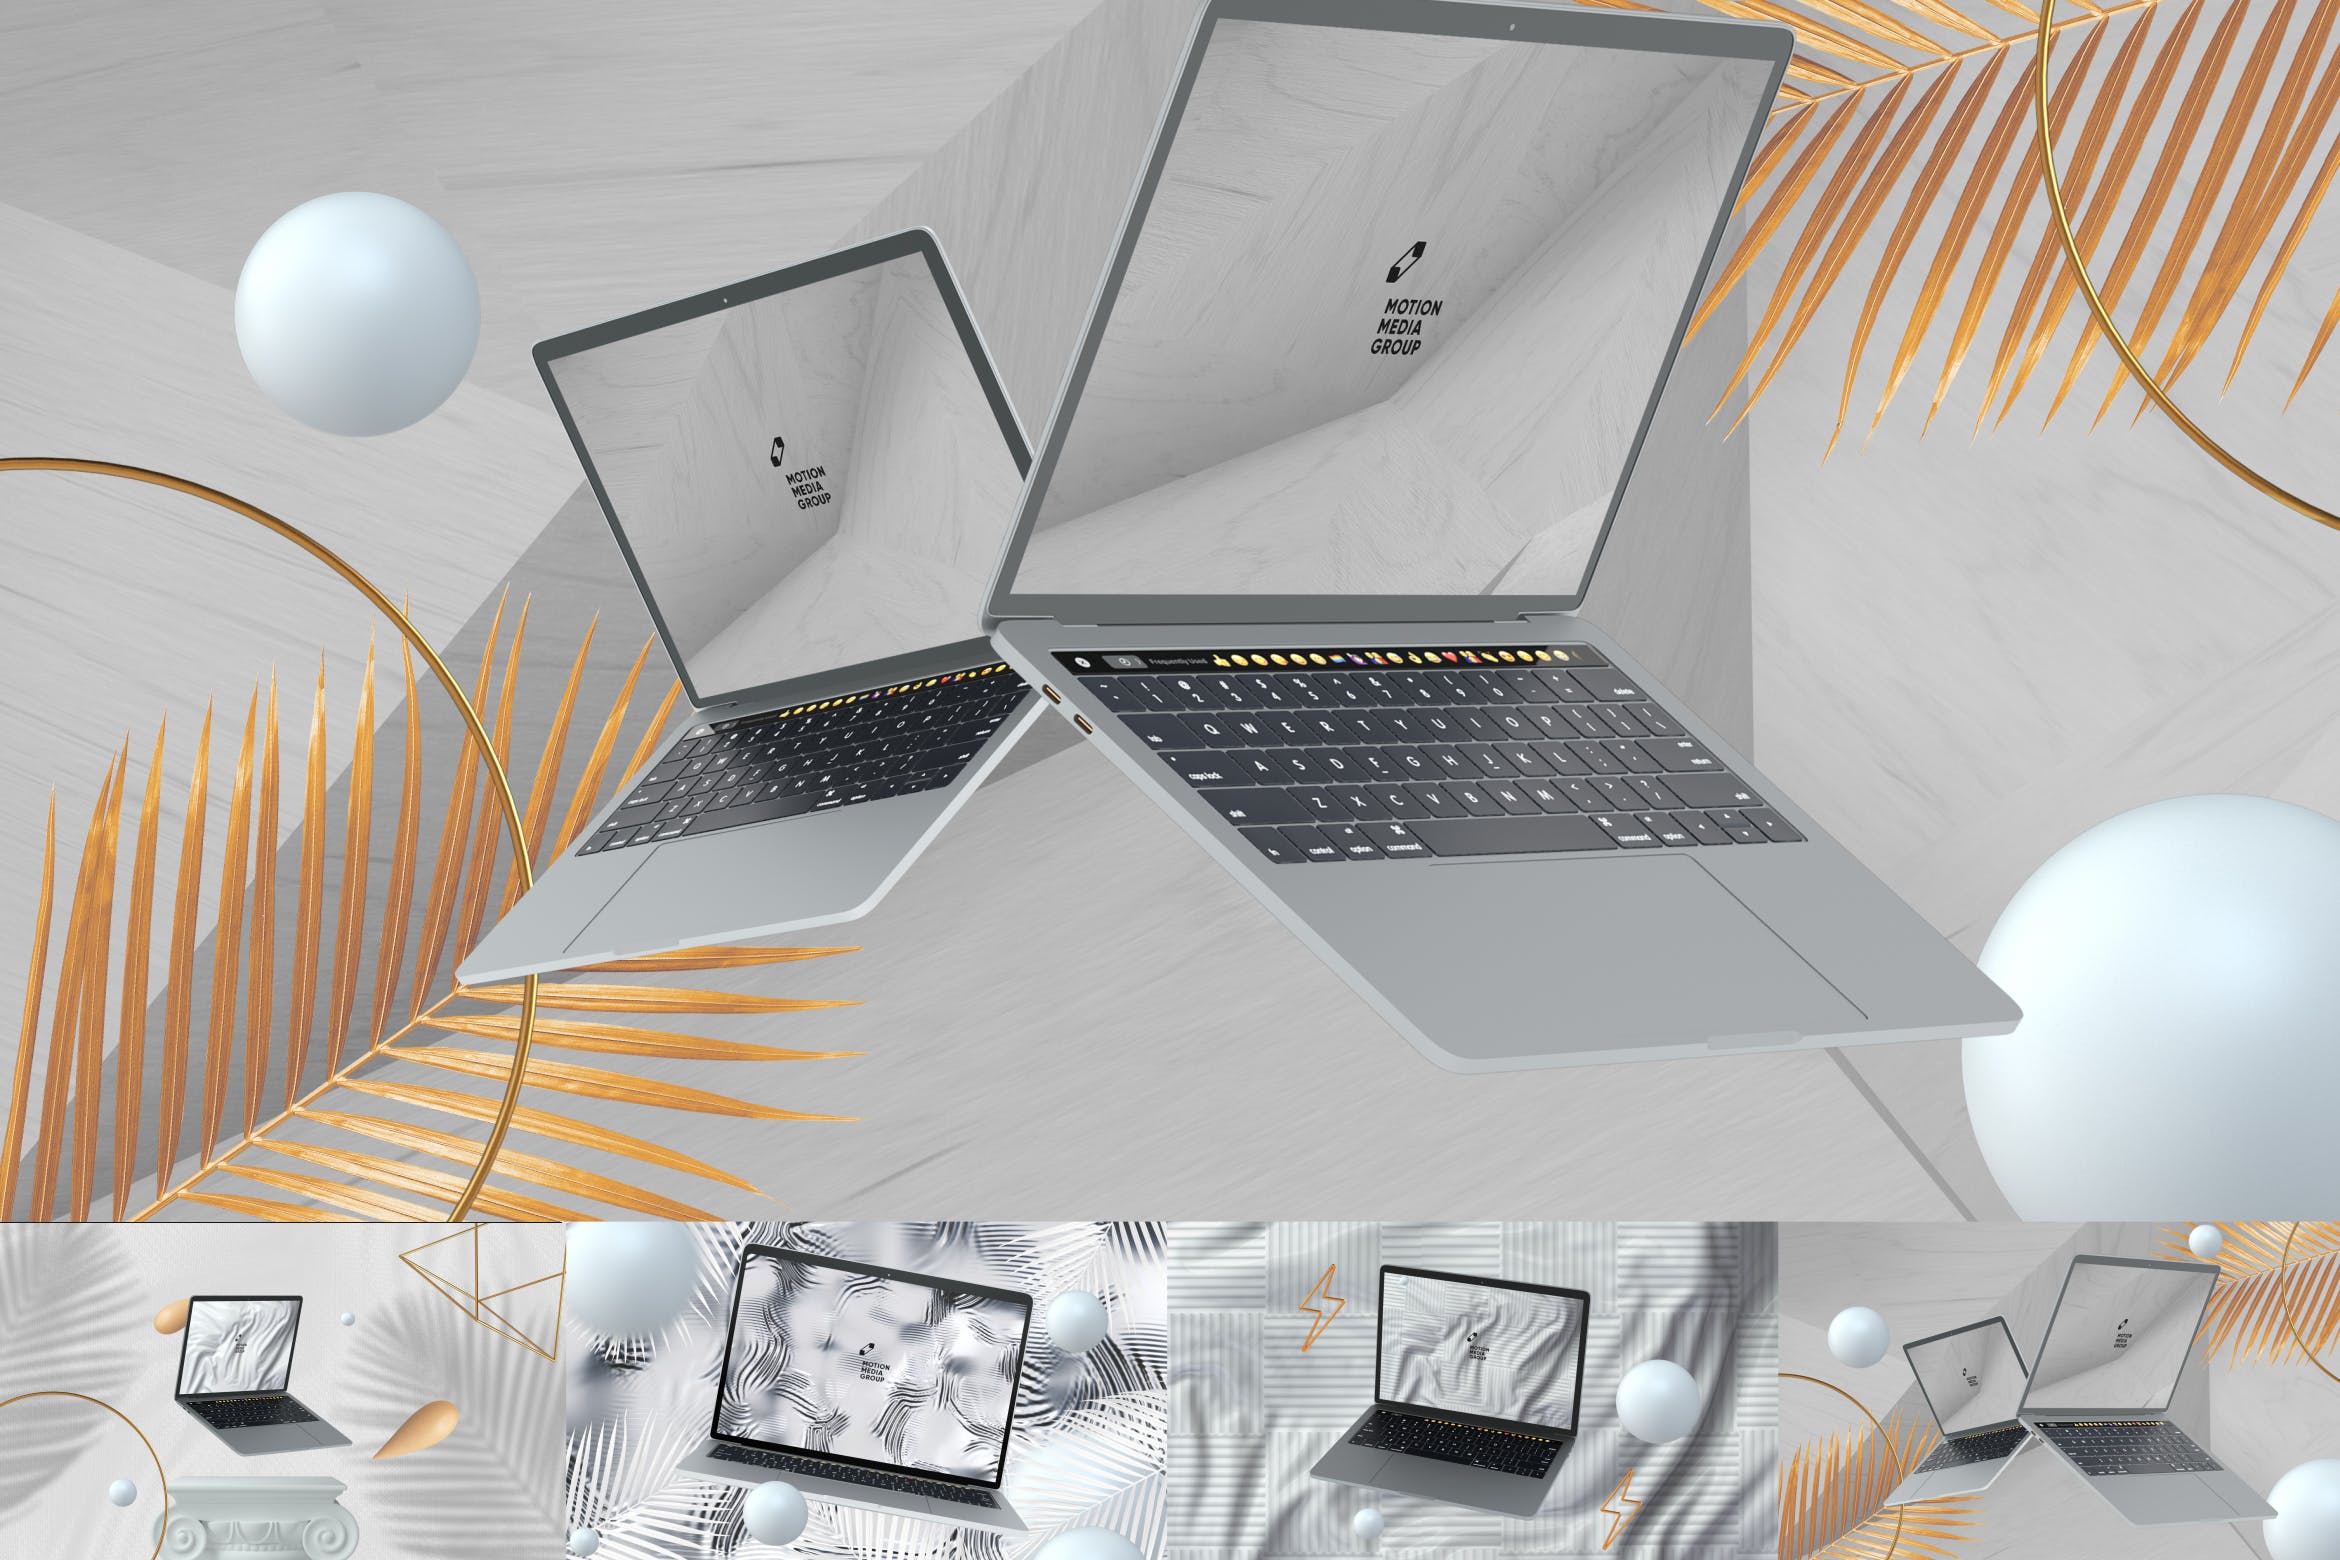 优雅时尚风格3D立体风格笔记本电脑屏幕预览素材库精选样机 10 Light Laptop Mockups插图